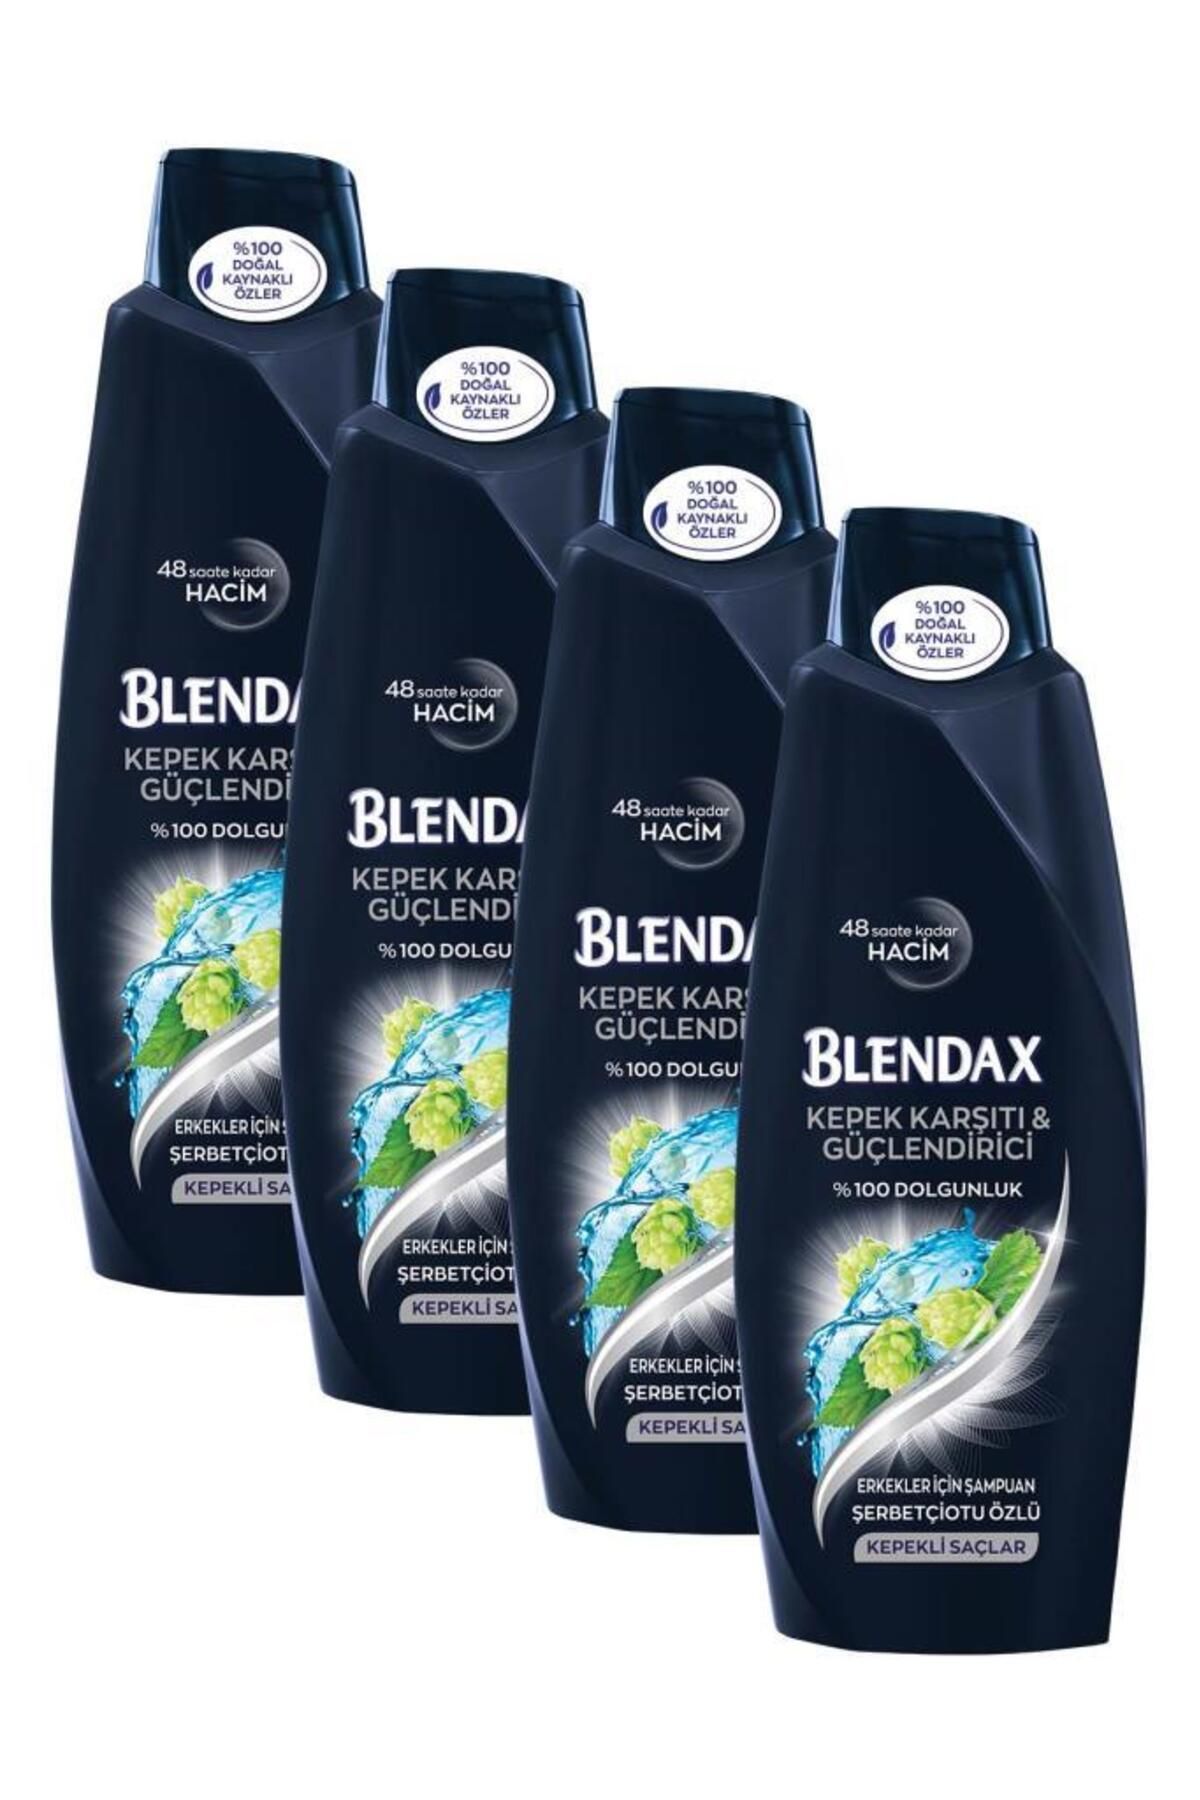 Blendax Erkekler I?çin Kepeğe Karşı Etkili 500 ml X 4 Adet